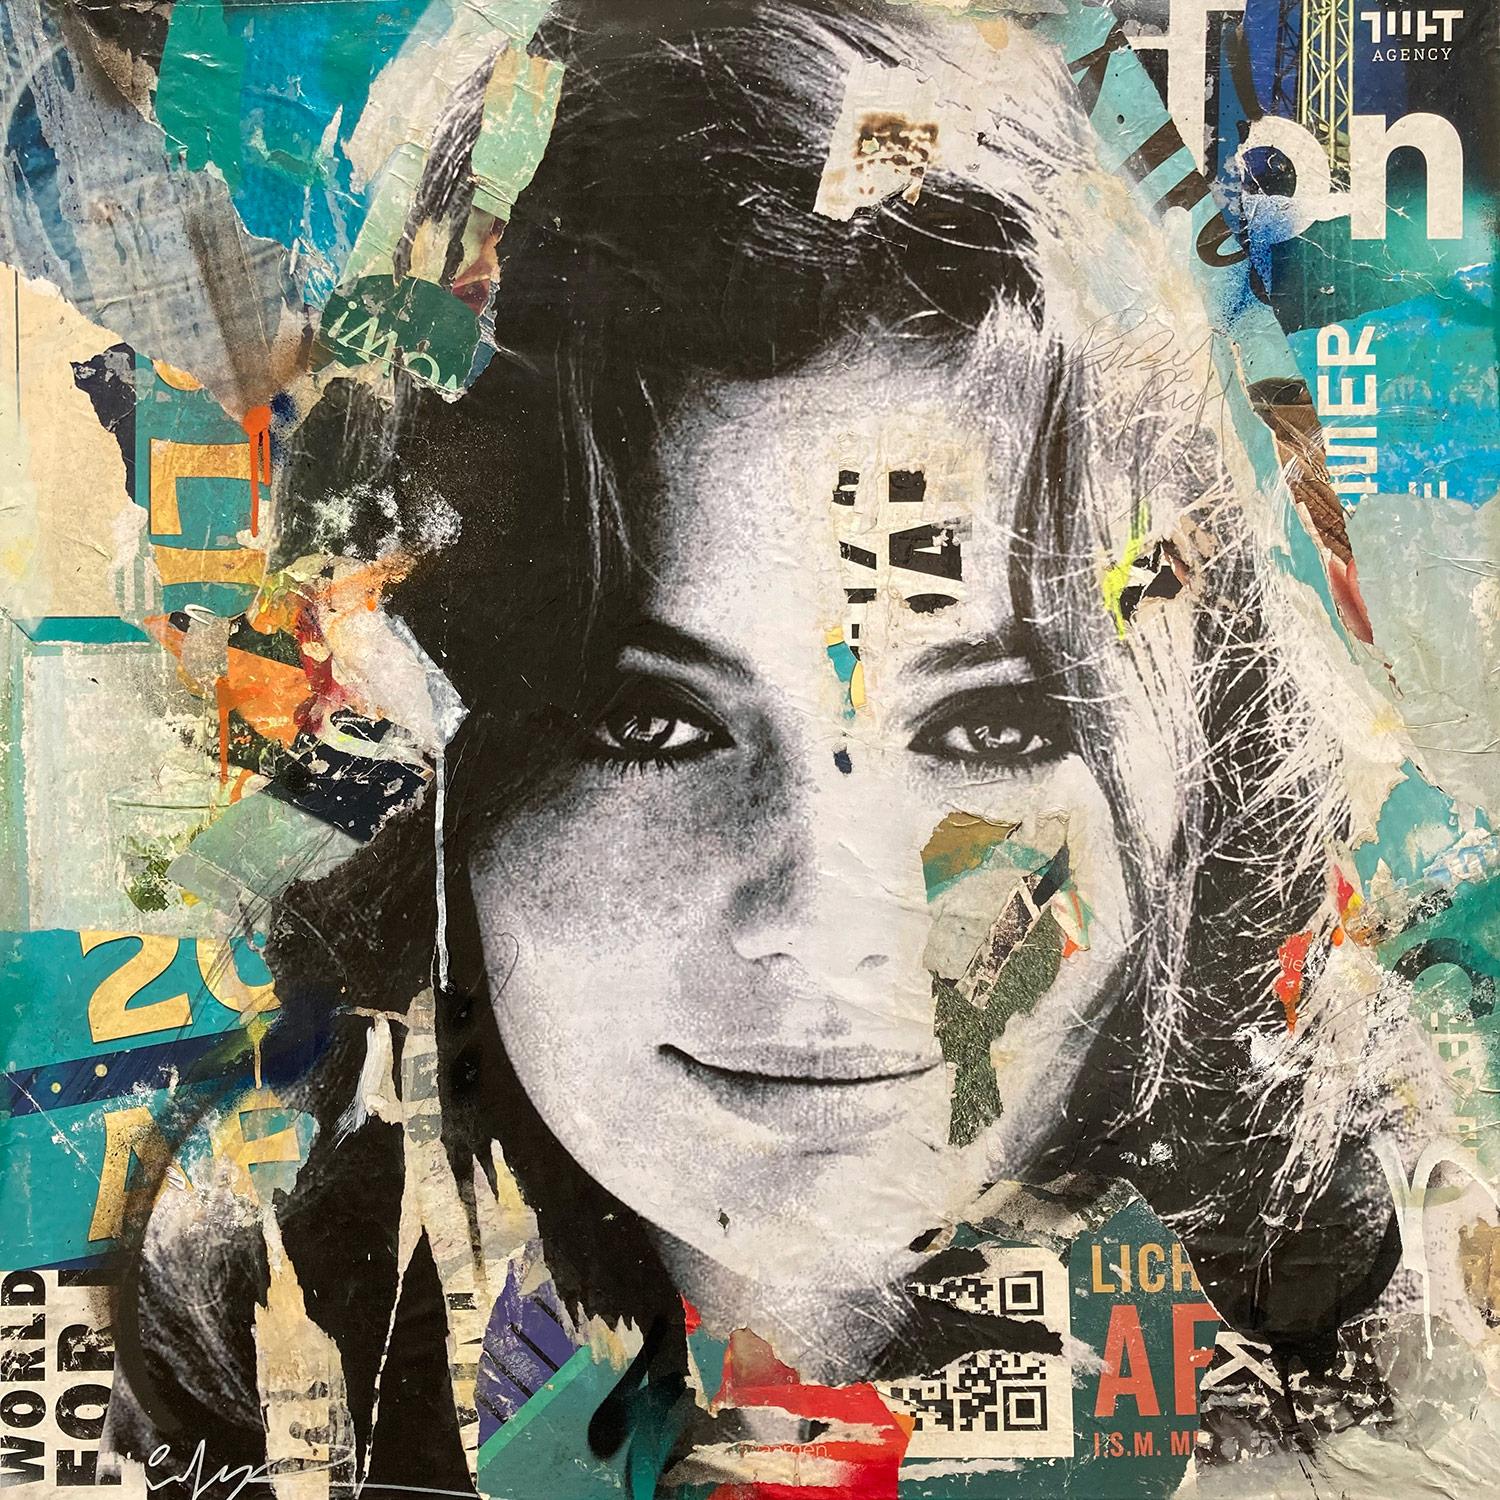 "Jacqueline Bisset" Pop Art Street Art Décollage Painting Mixed Media Portrait 